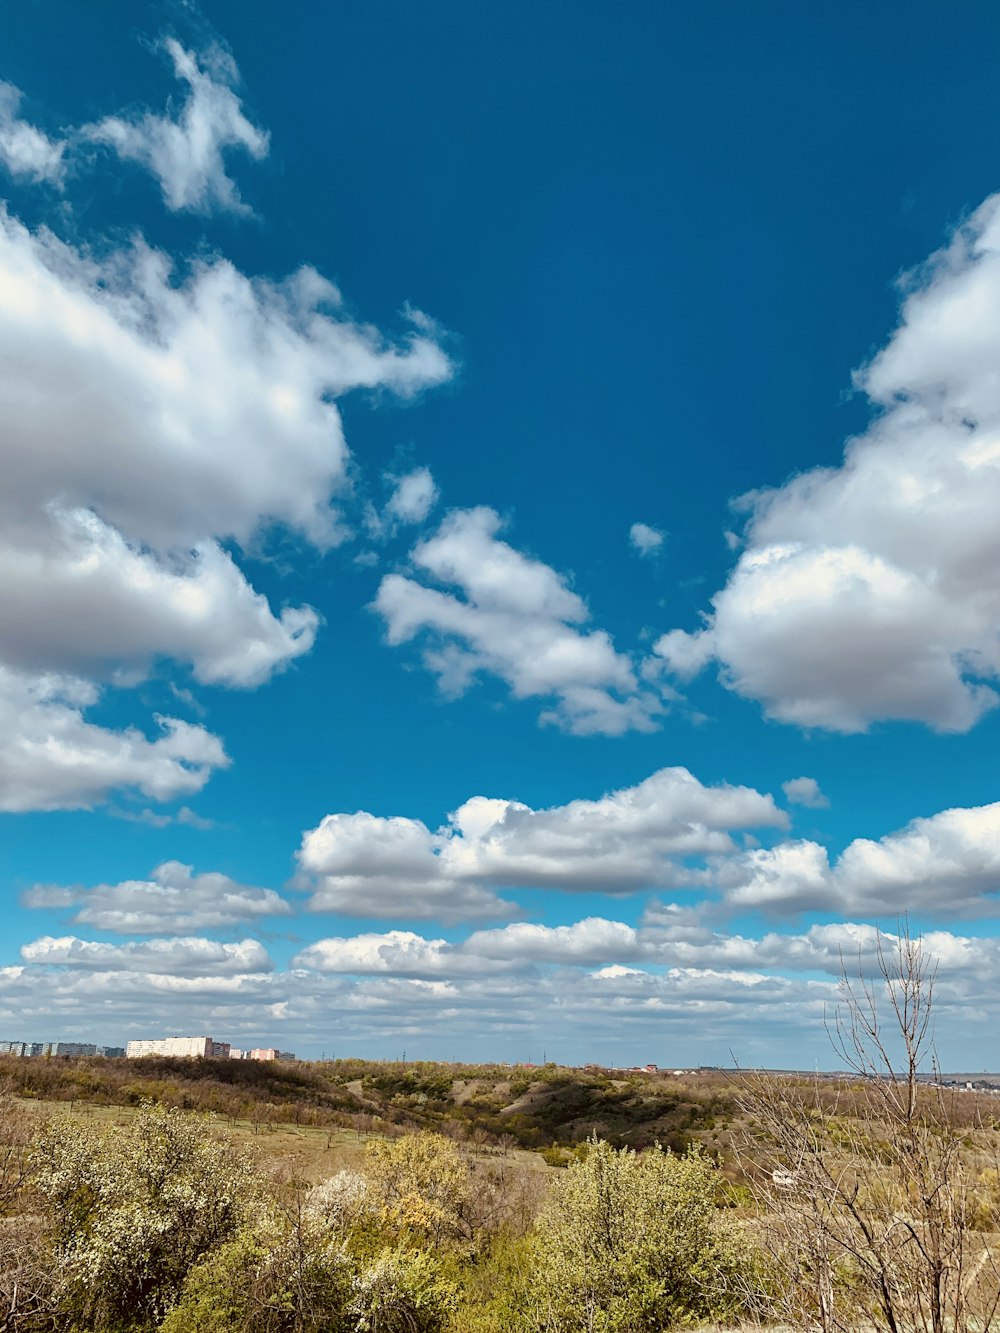 campo de hierba verde bajo el cielo azul y nubes blancas durante el día